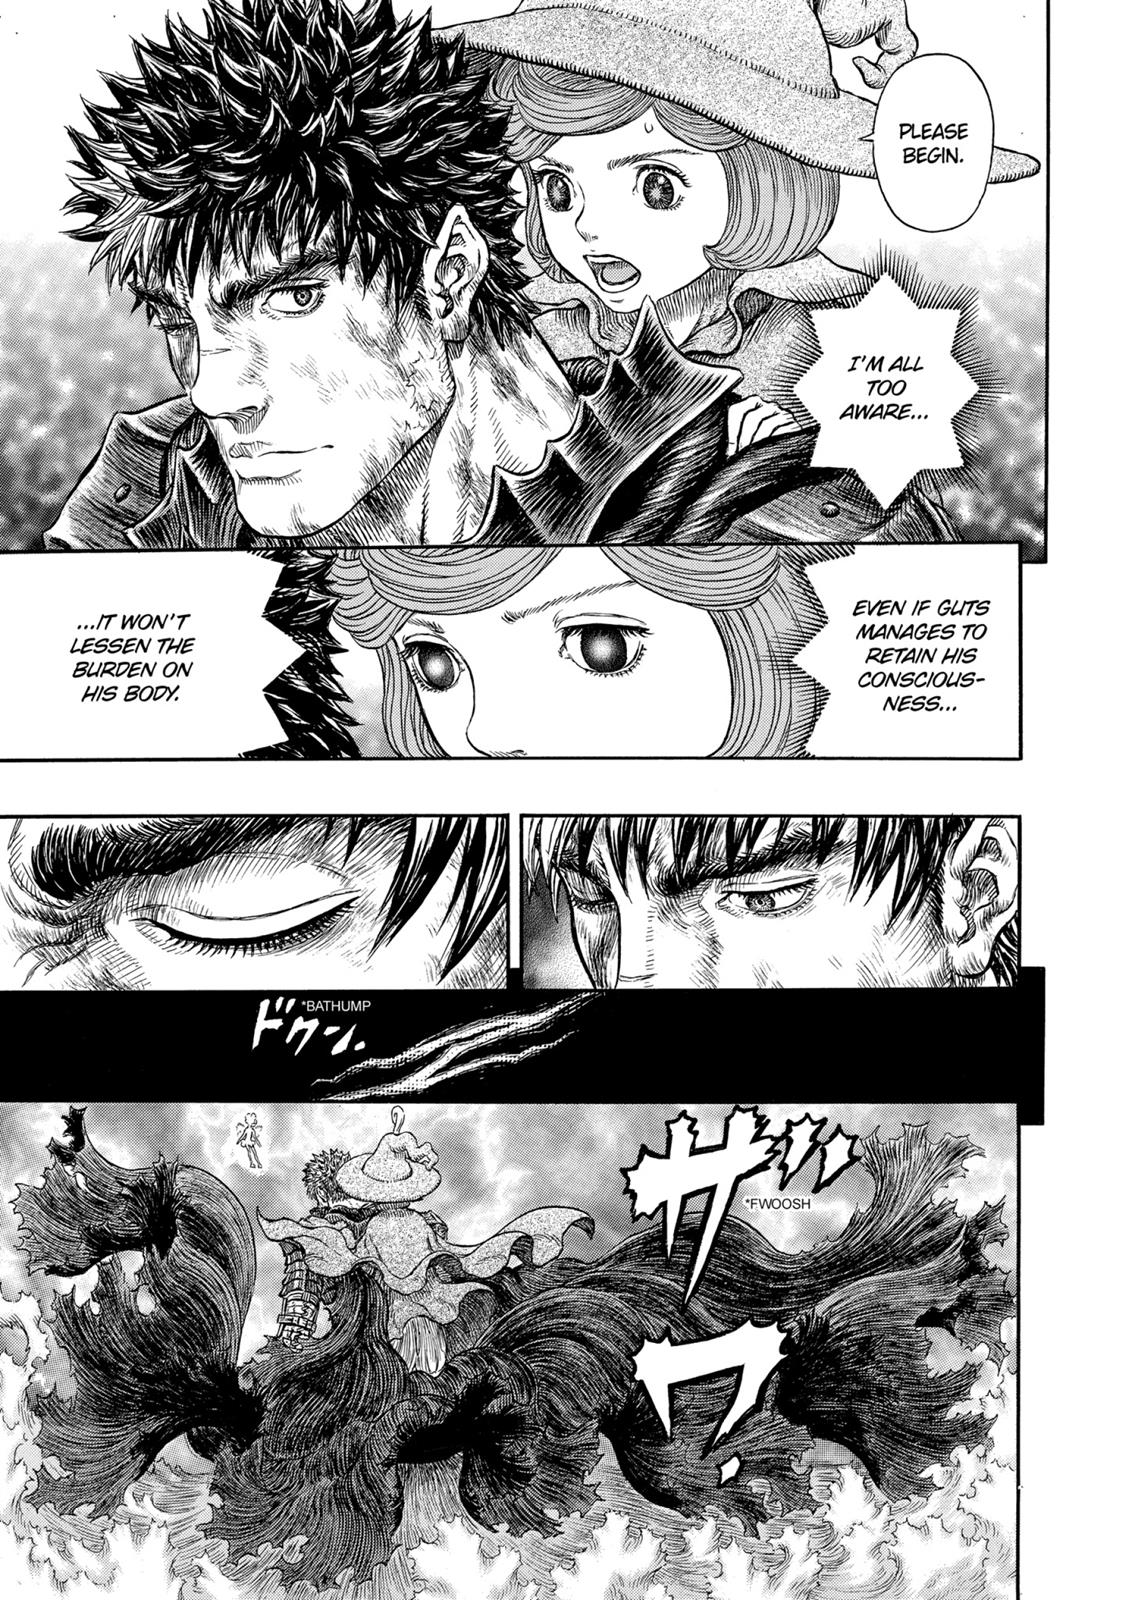 Berserk Manga Chapter 318 image 10